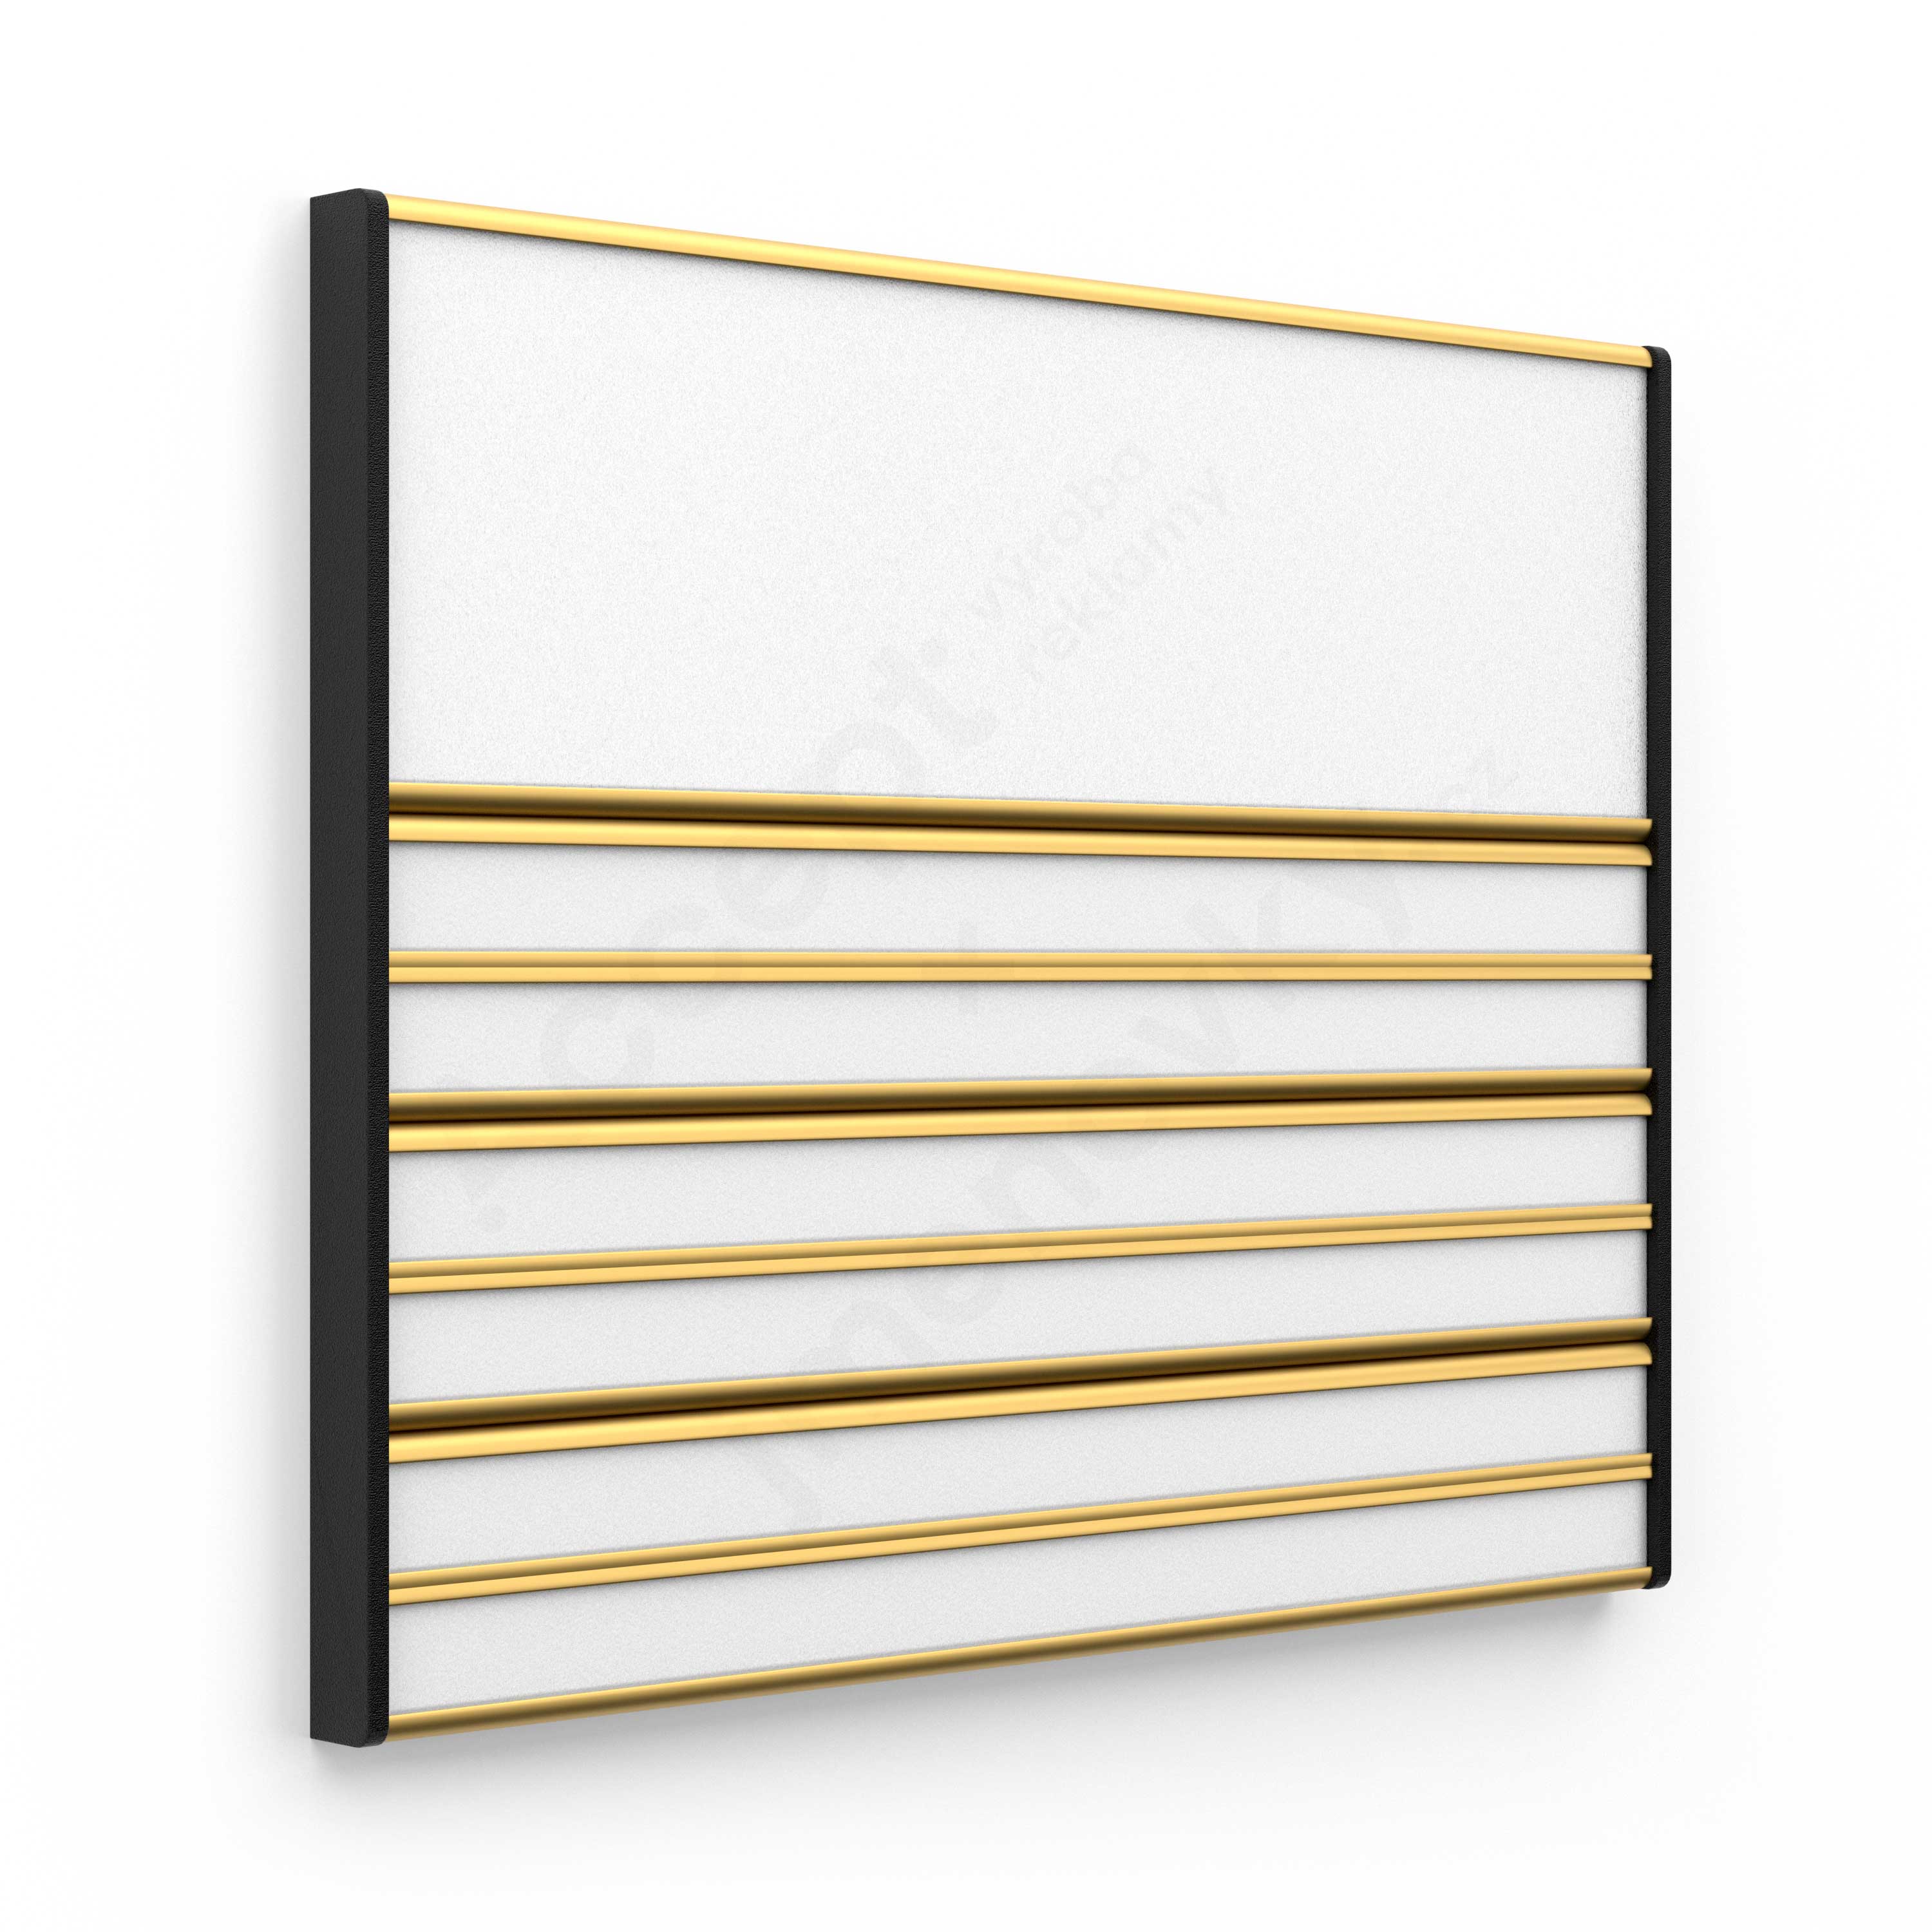 Dveřní tabulka ACS (zásuvný systém, 187 x 156 mm)